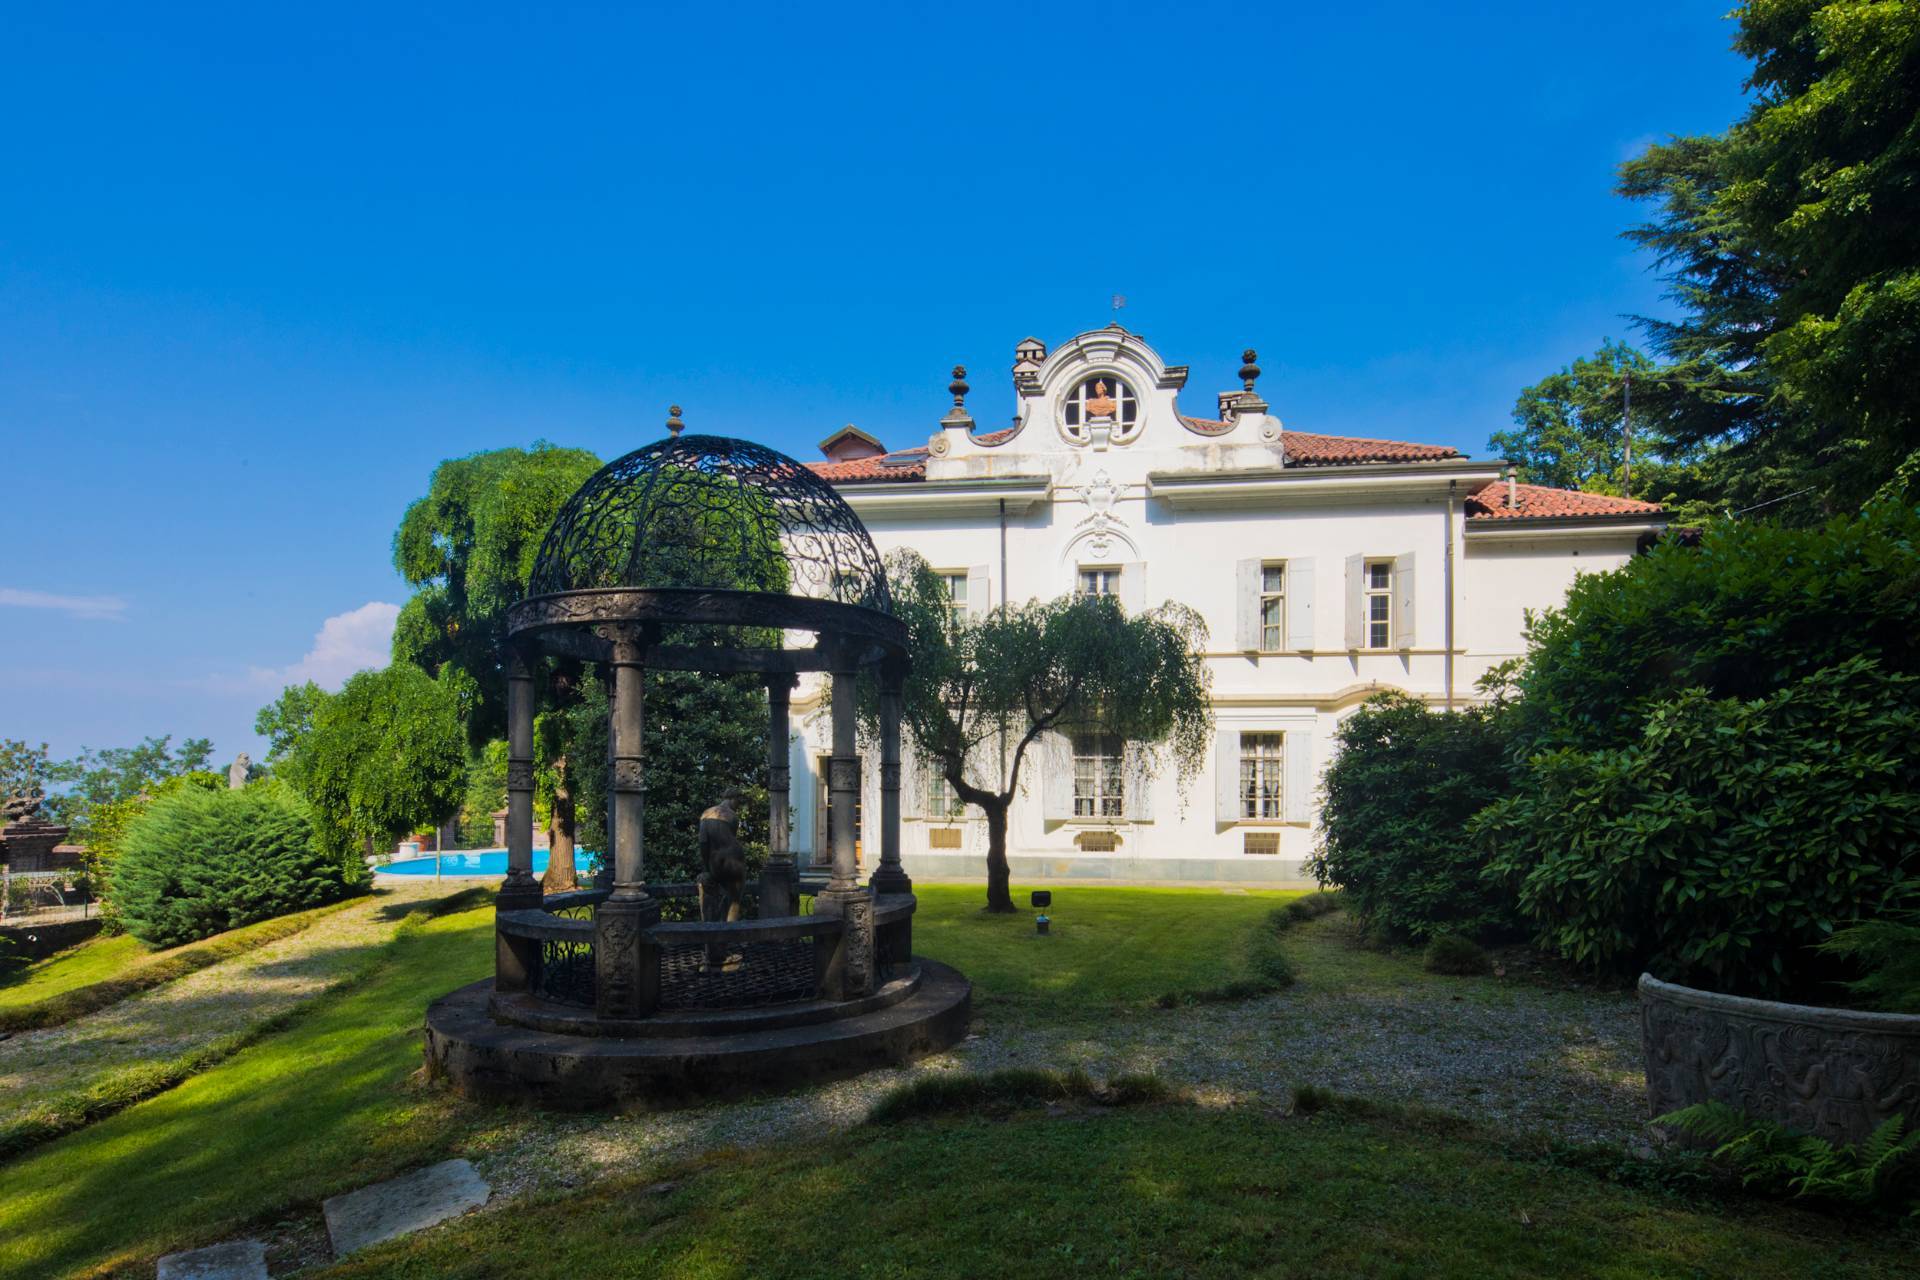 Villa unifamiliare in affitto, San Mauro Torinese